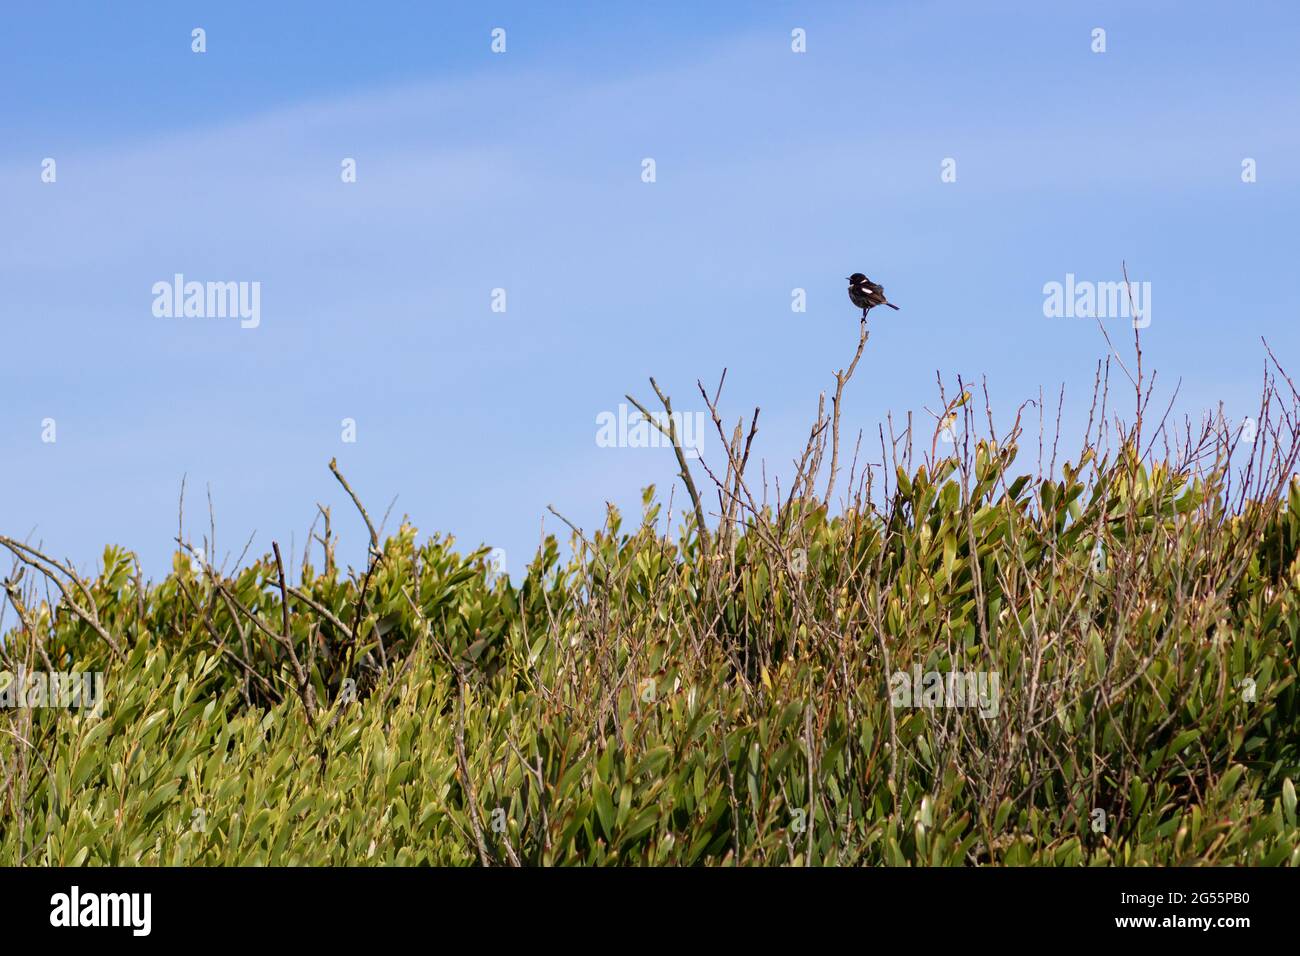 Tailleur de pierre africain debout sur une branche de brousse contre le ciel bleu. Photographie de paysage d'oiseau dans la zone côtière avec espace vide pour le texte Banque D'Images